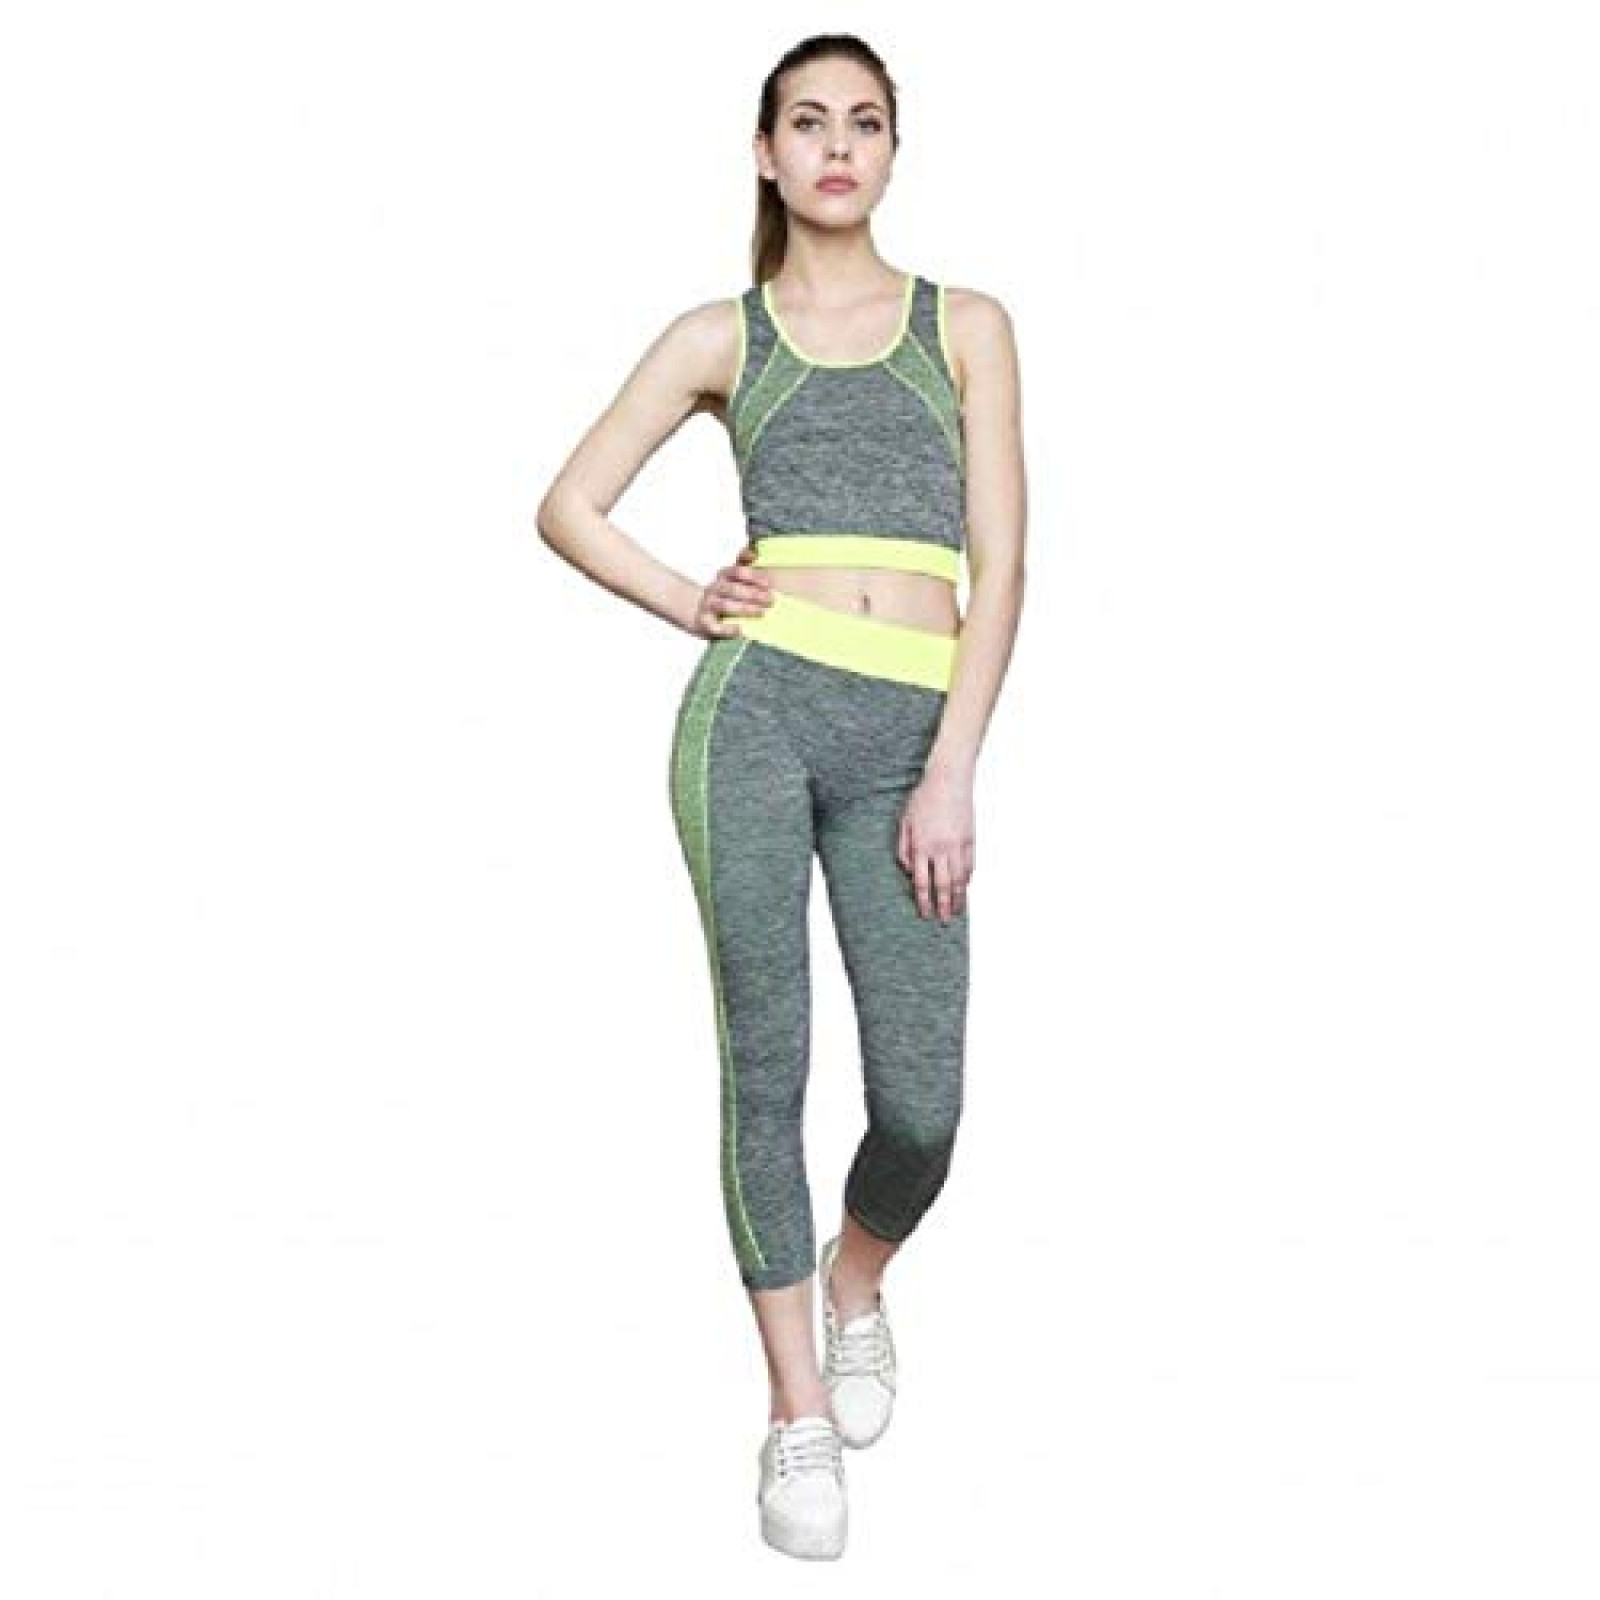 Женская майка и лосины для фитнеса, йоги, бега Yoga Wear A Suit Slimming зеленые 130592